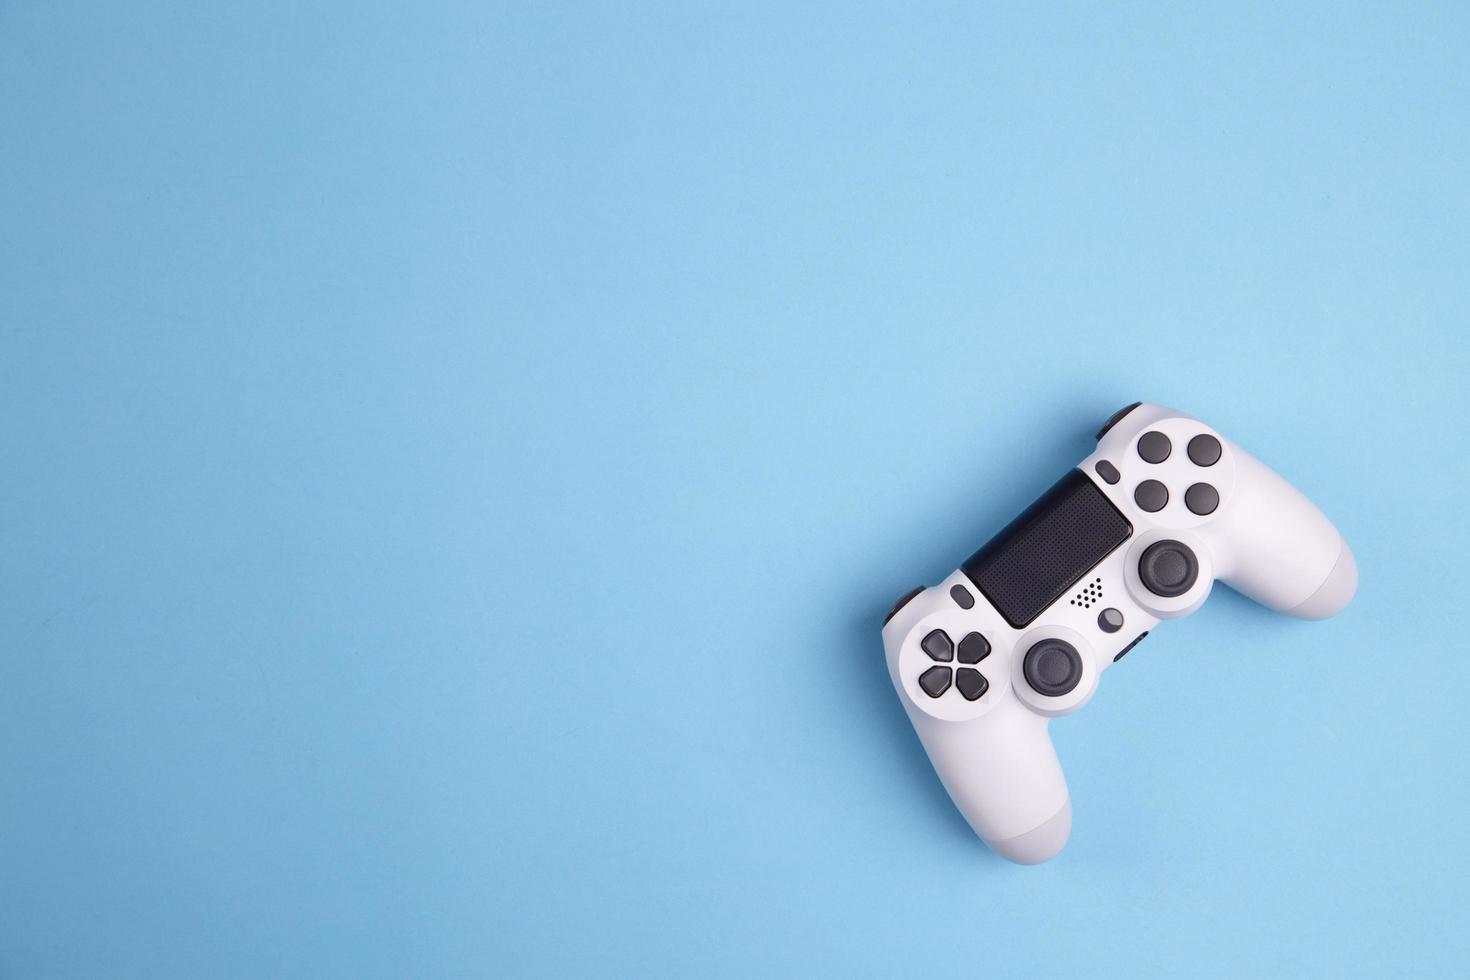 controlador de juegos joystick aislado sobre fondo azul, consola de videojuegos desarrollada entretenimiento interactivo foto